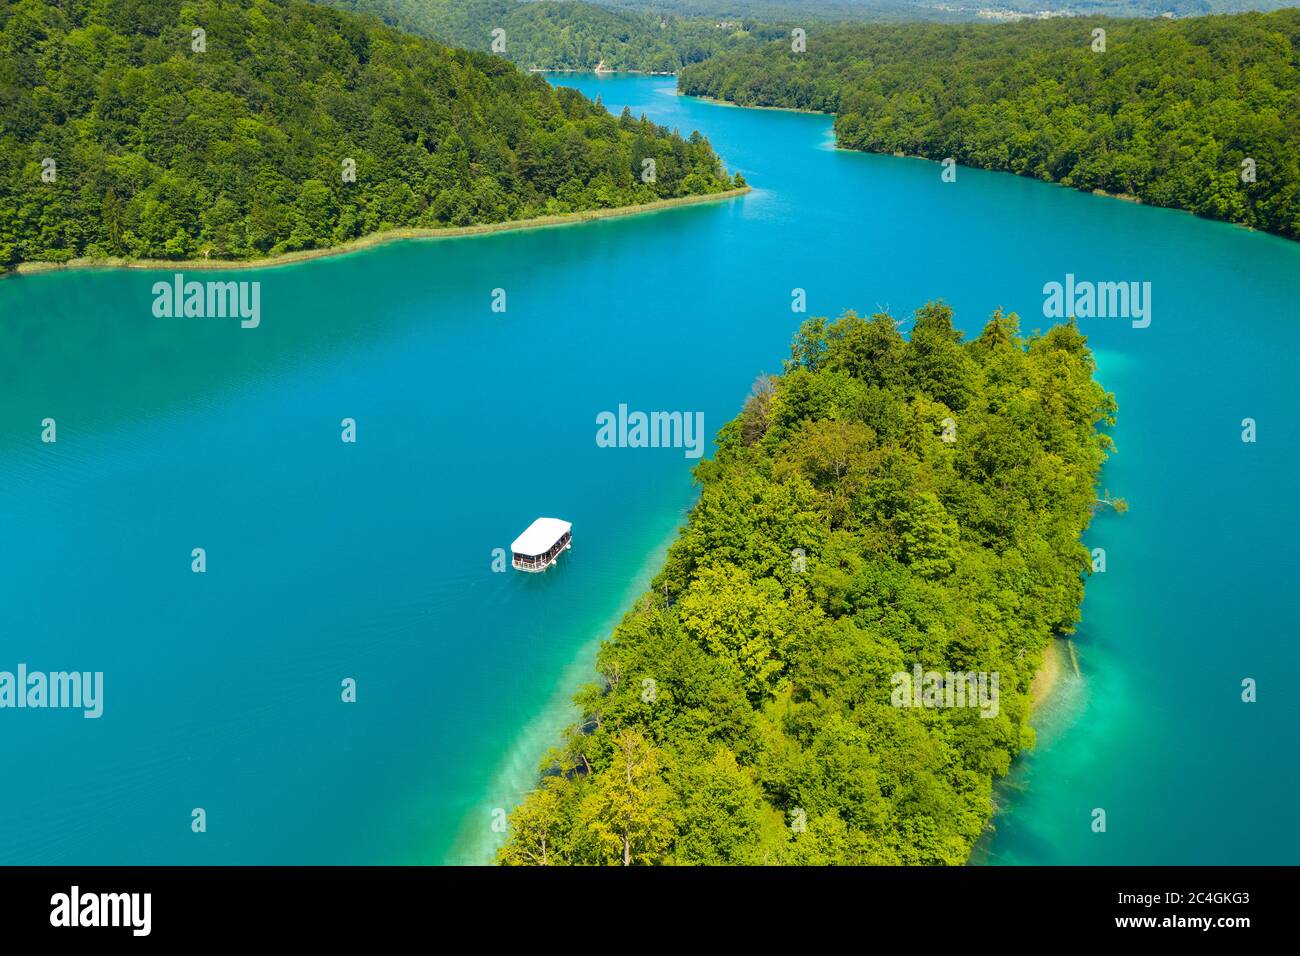 Vue aérienne du lac Kozjak avec le bateau blanc, Parc national des lacs de Plitvice, Croatie Banque D'Images